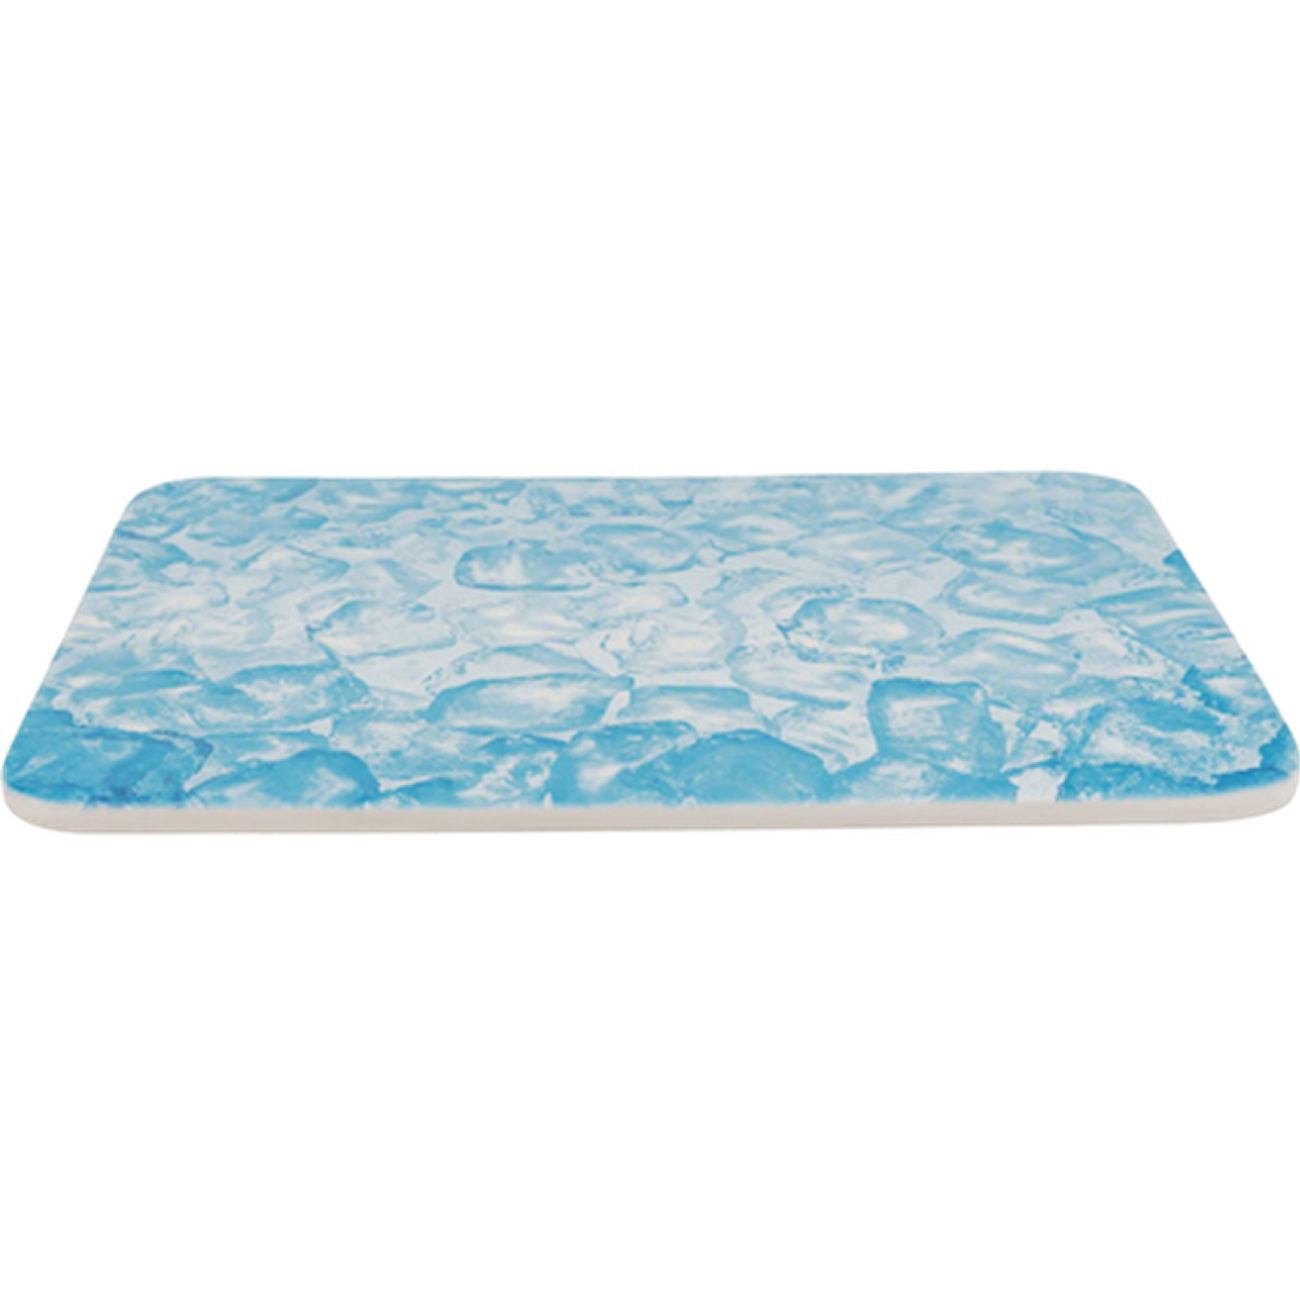 Cooling Plate - Kylplatta Smådjur Blue 28 x 20 cm